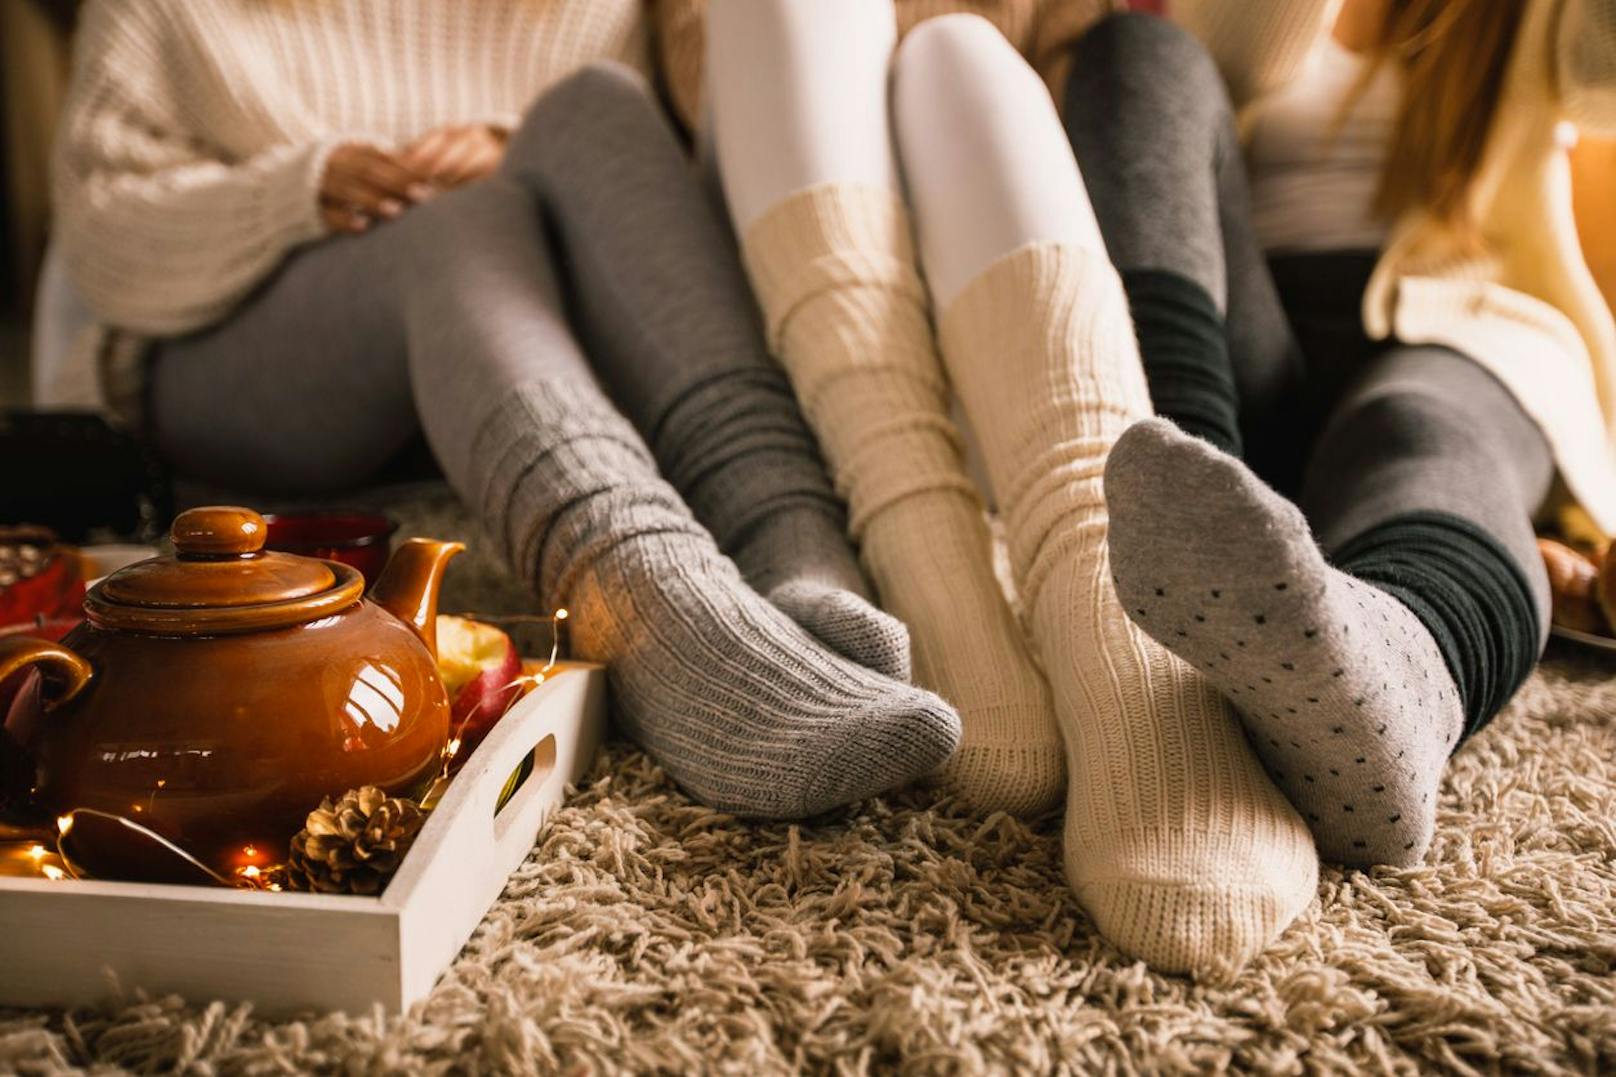 Erspare dir kalte Füße und schaffe dir einen dicken und weichen Teppich an, der viel Wärme vermittelt.